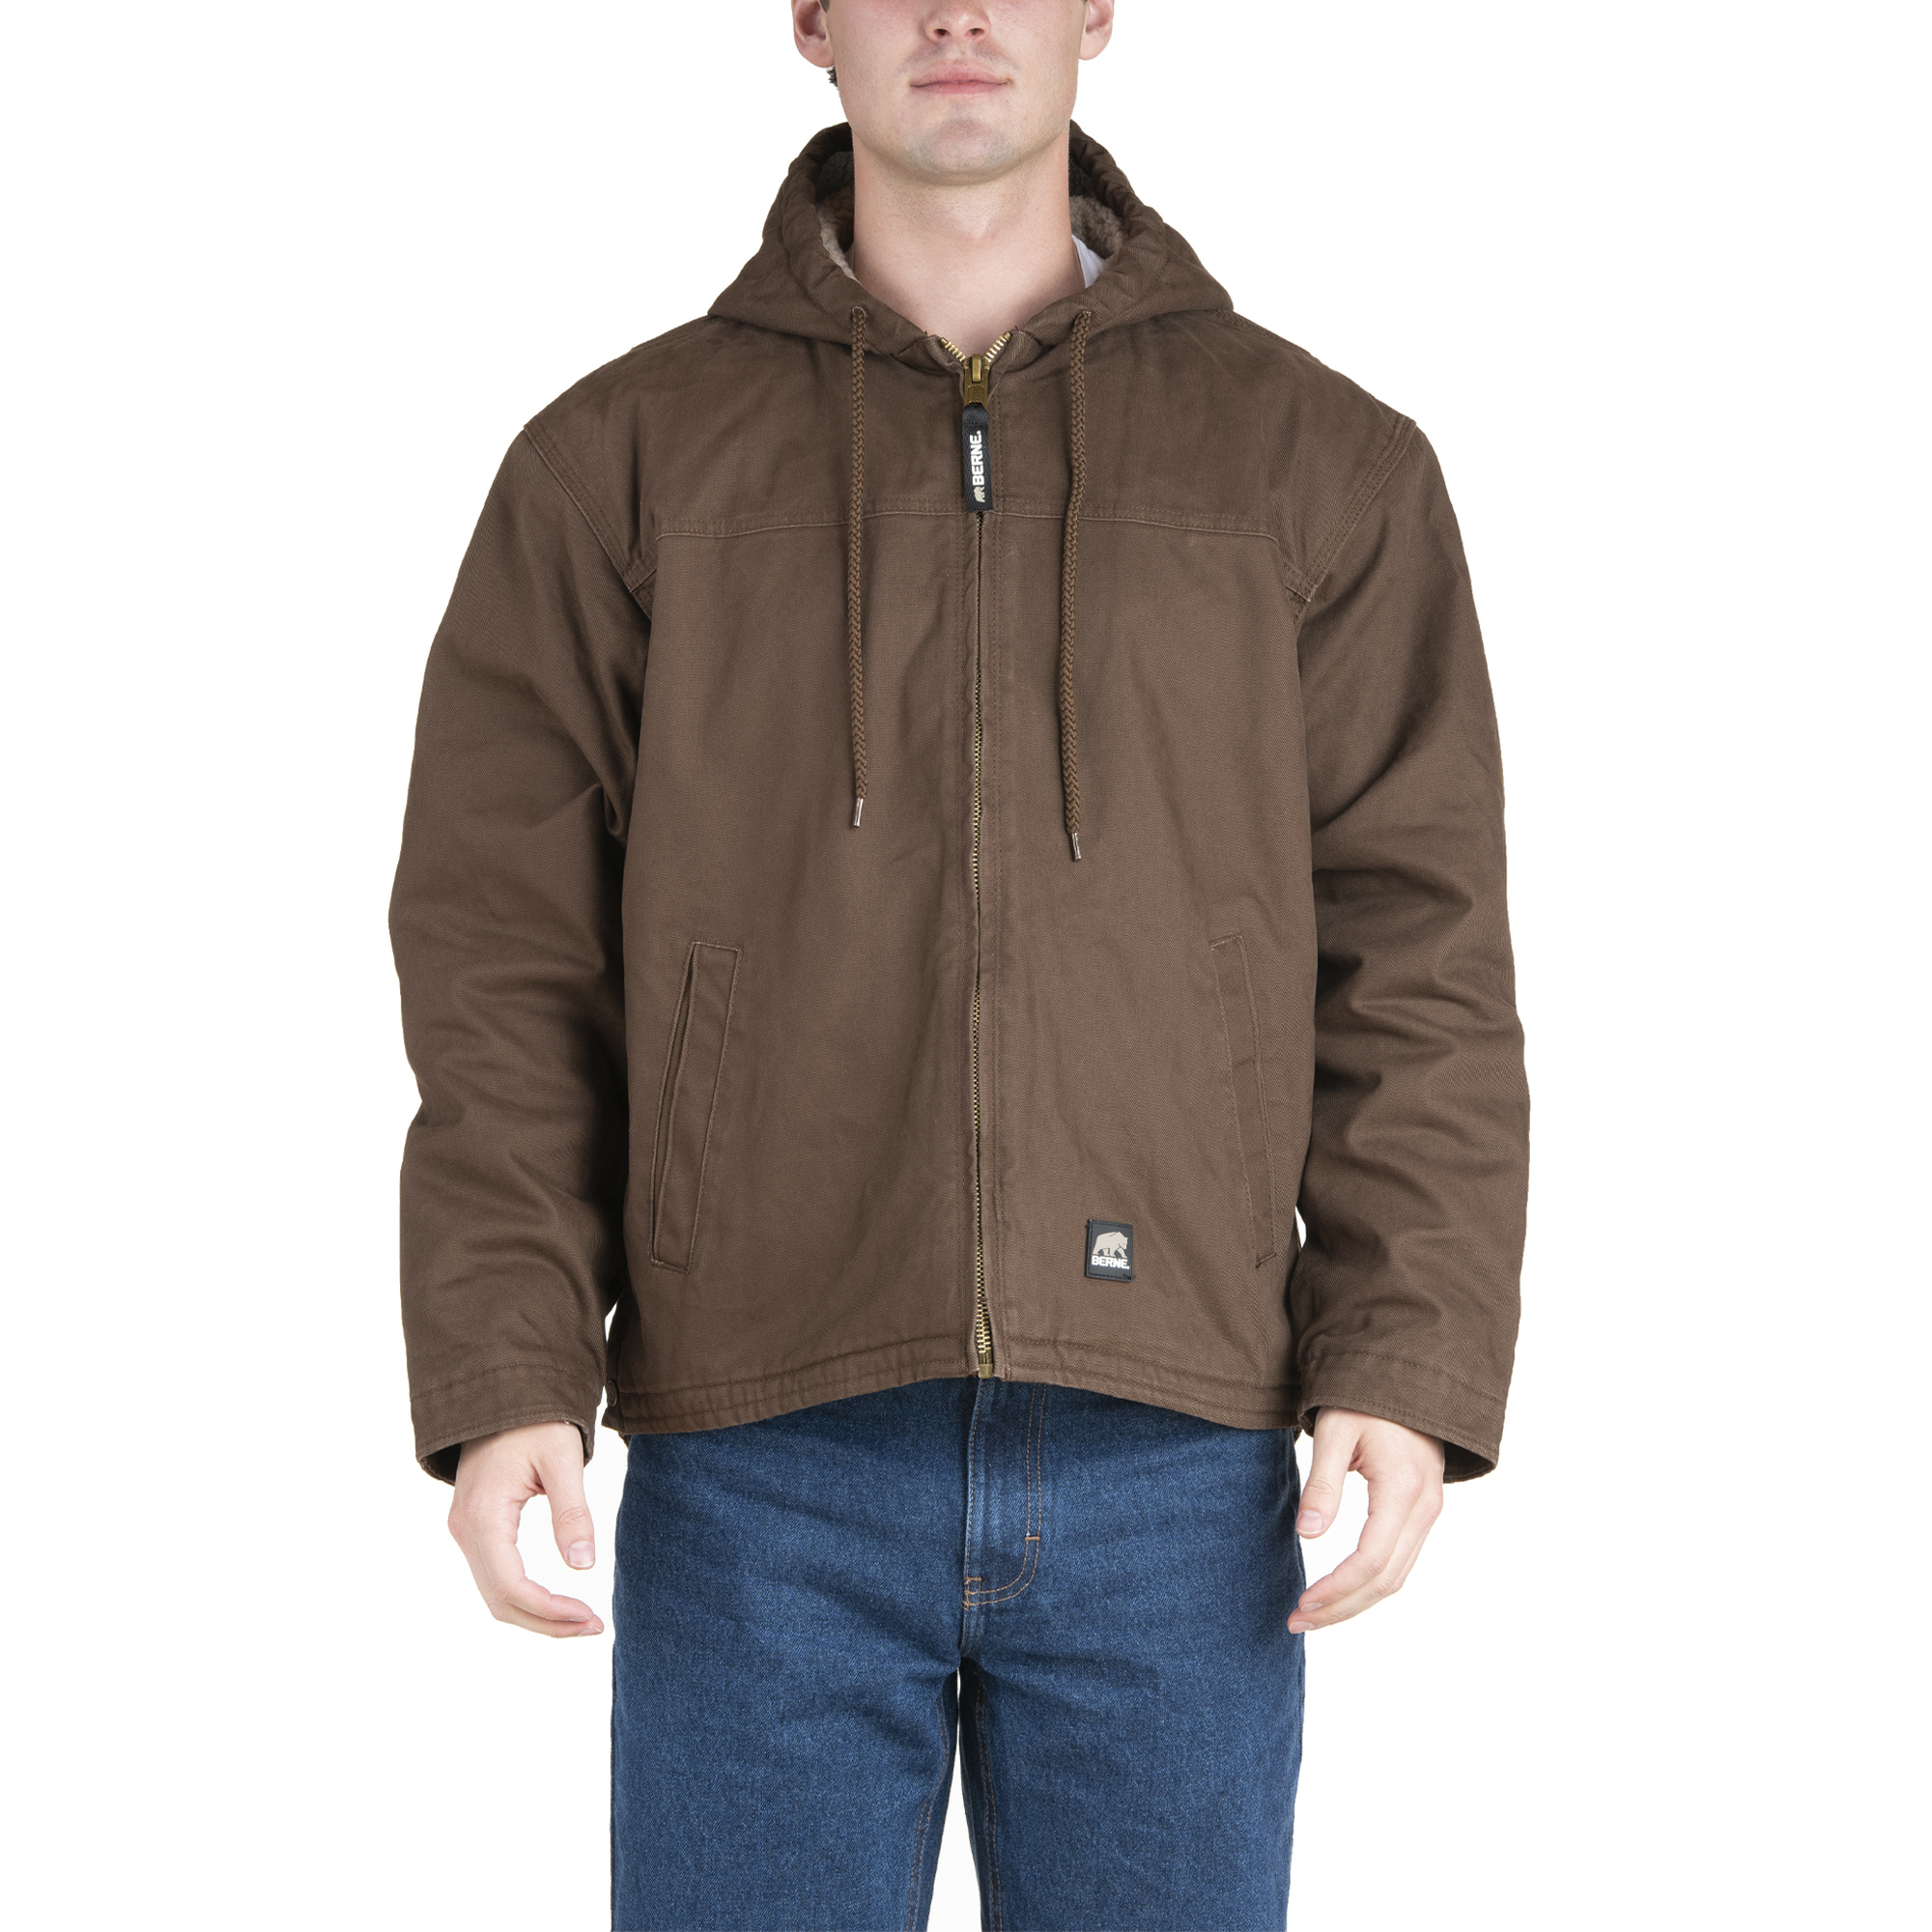 Berne Apparel, Dorset Hooded Work Coat, Size M, Color Bark, Model HJ626